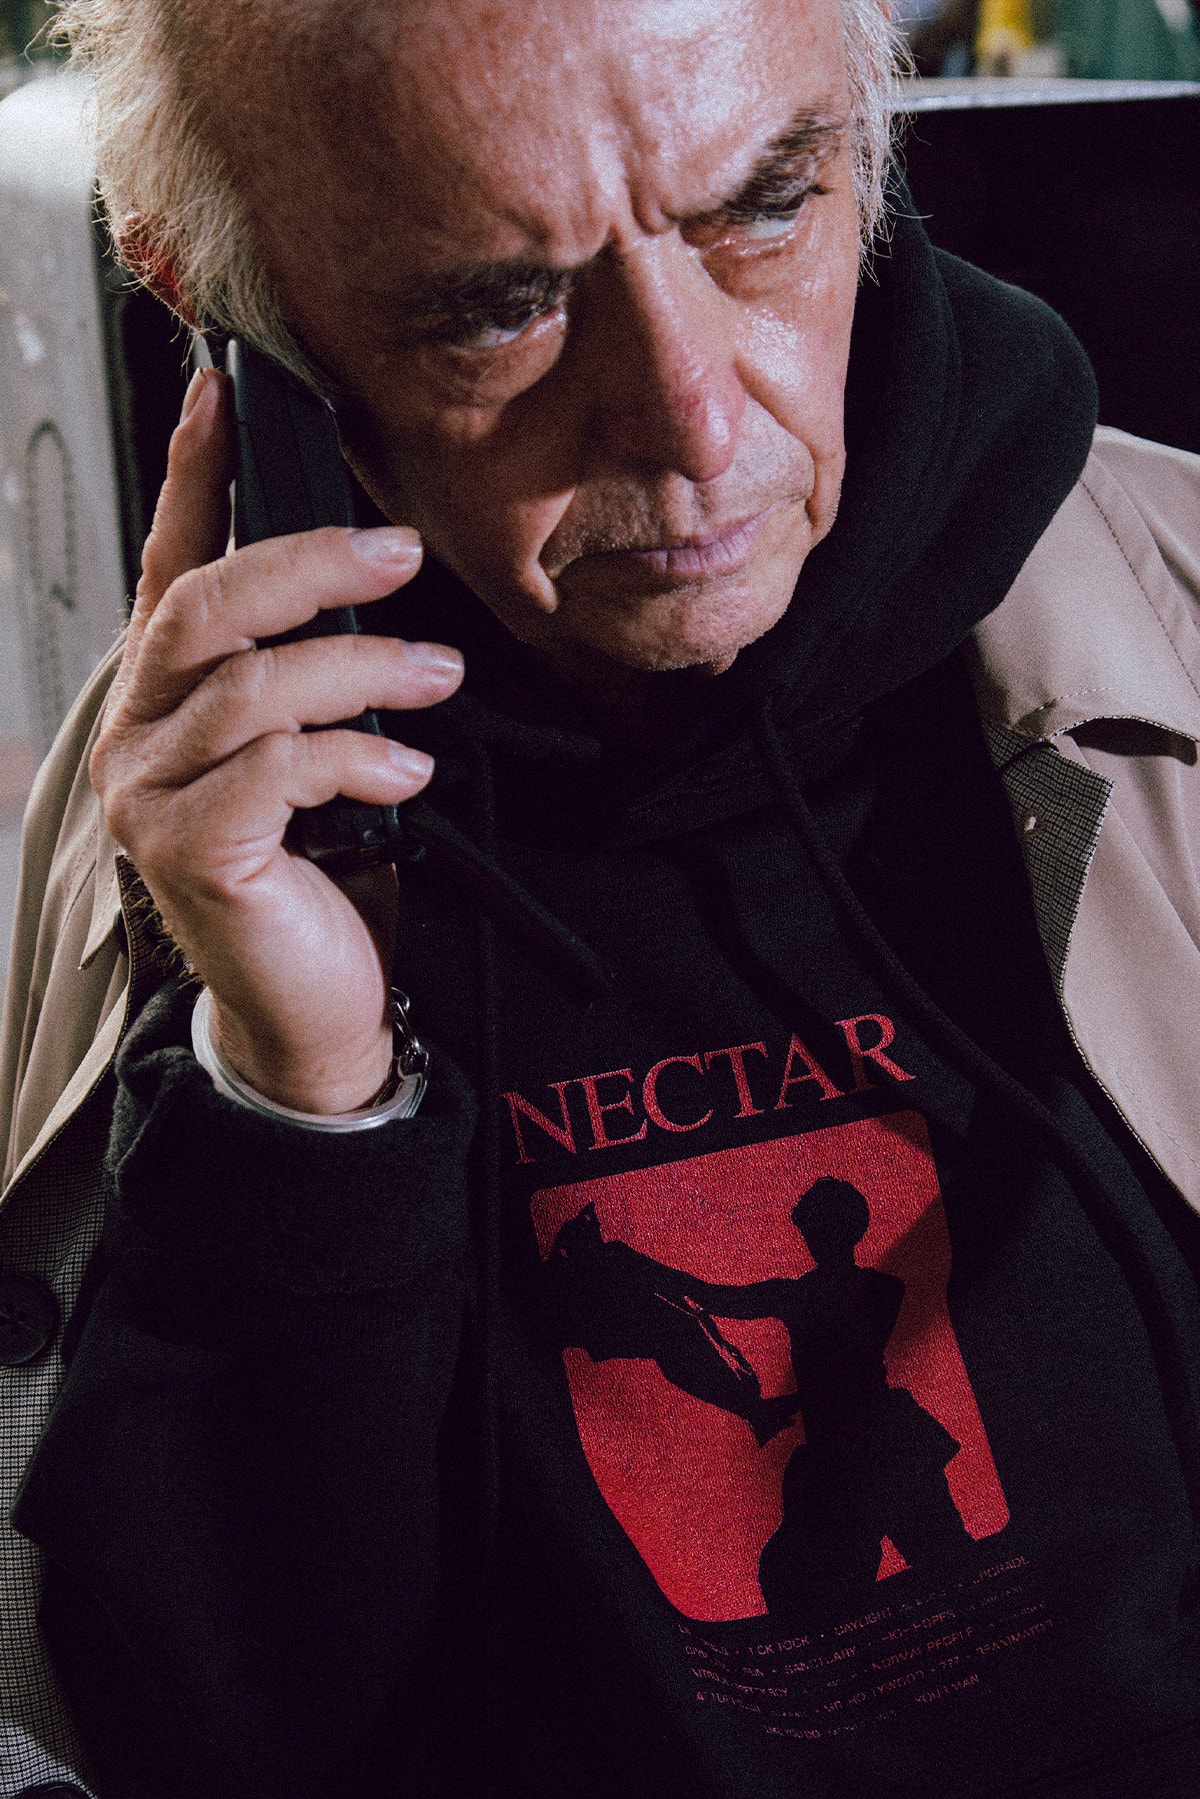 ジョージが2ndアルバム『Nectar』のリリースを記念したマーチャンダイズを発表 Joji New Album 'Nectar'  Merch collection release